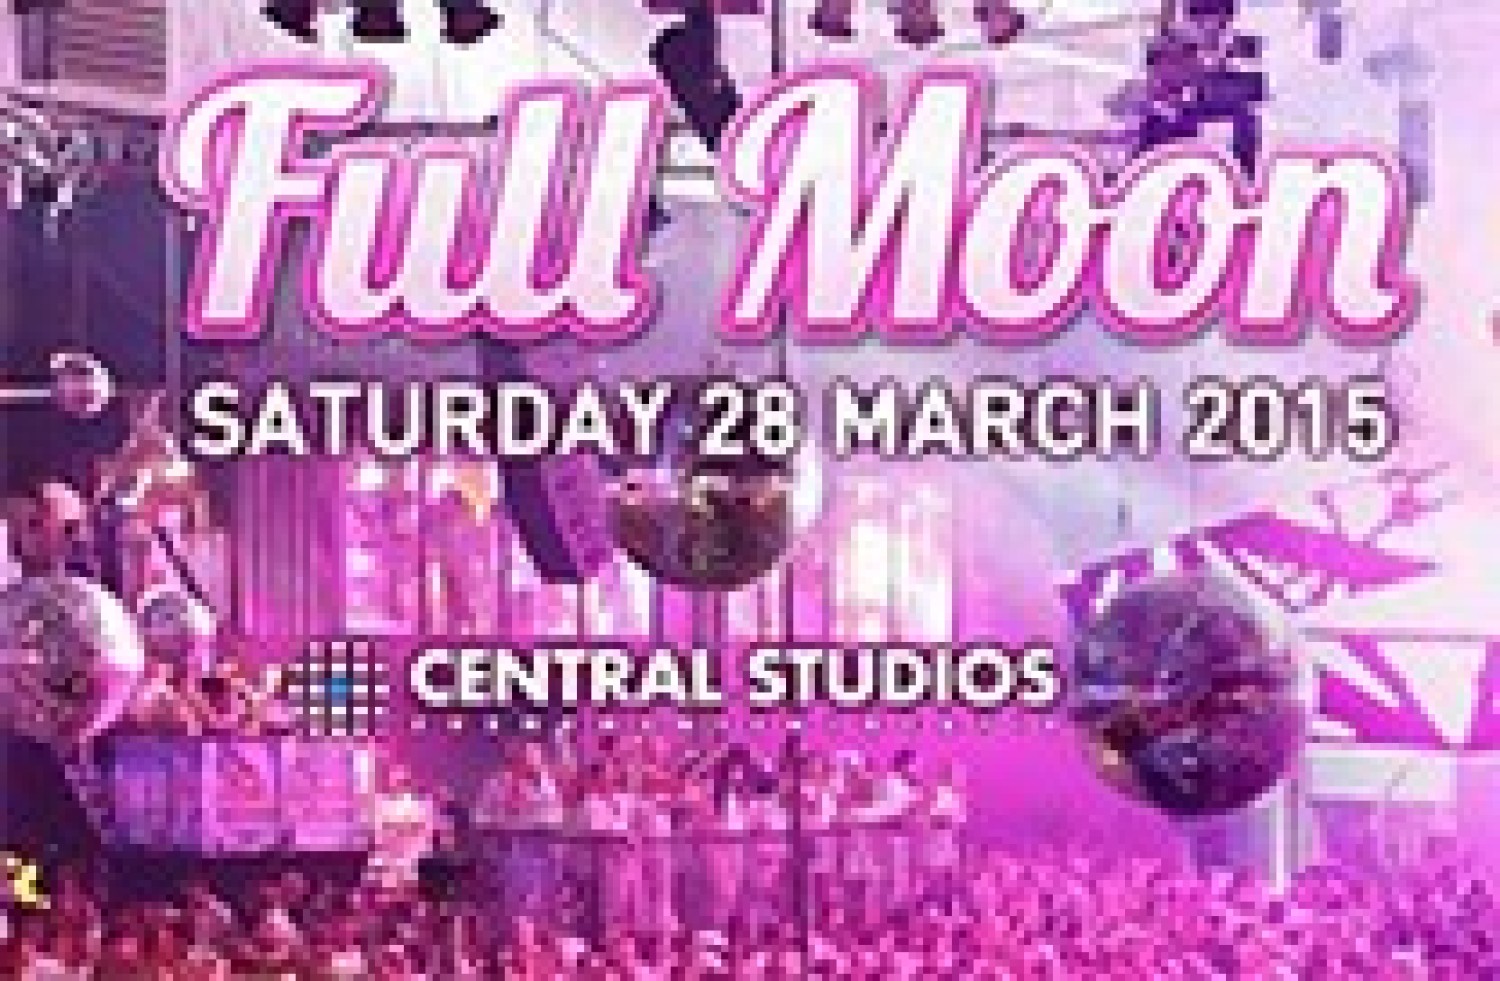 Party nieuws: Nog maar 500 tickets voor Full Moon, zaterdag 28 maart